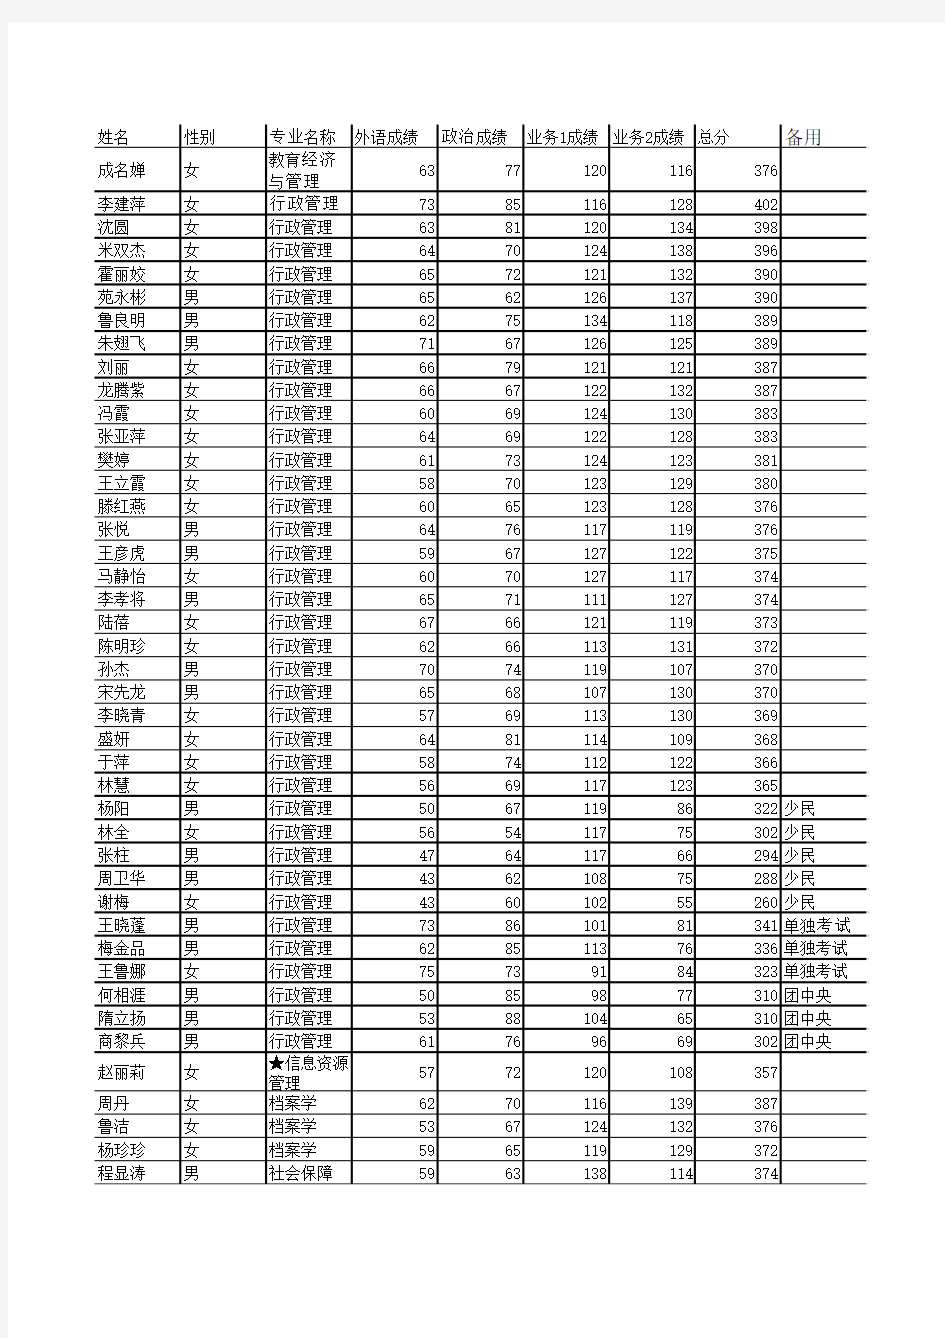 浙江大学行政管理2009年复试名单和成绩